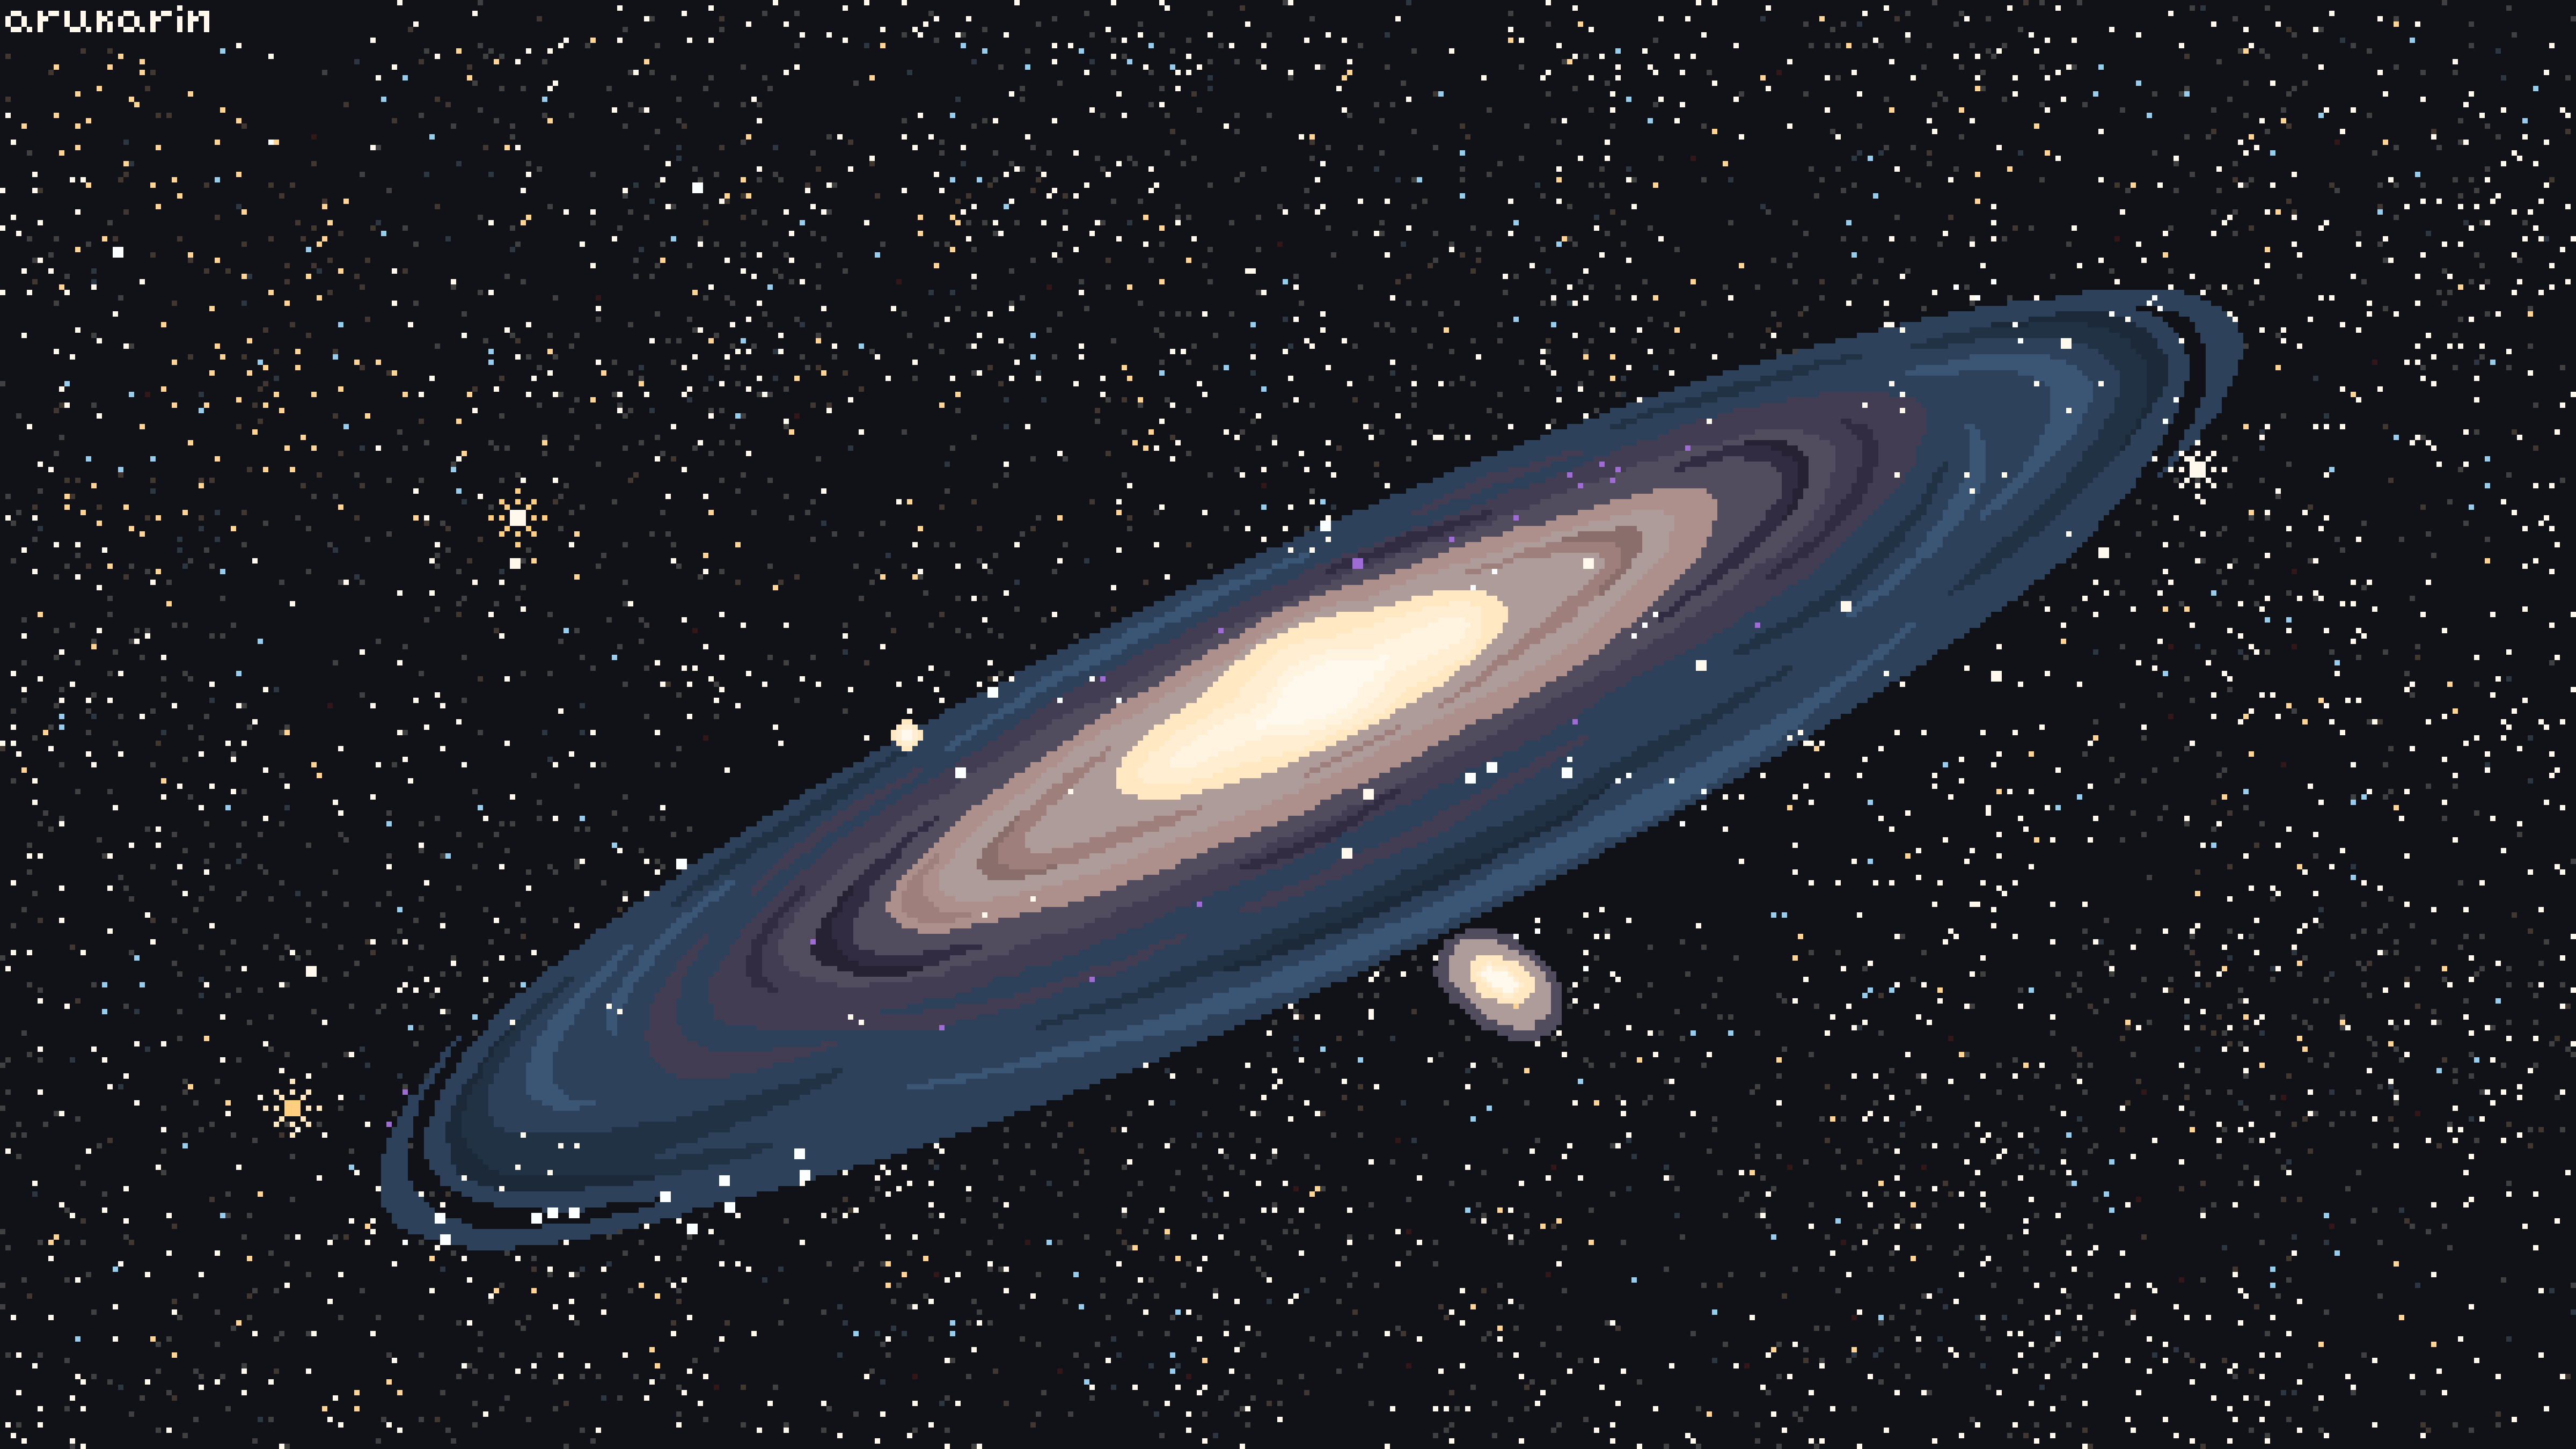 andromeda galaxy planets